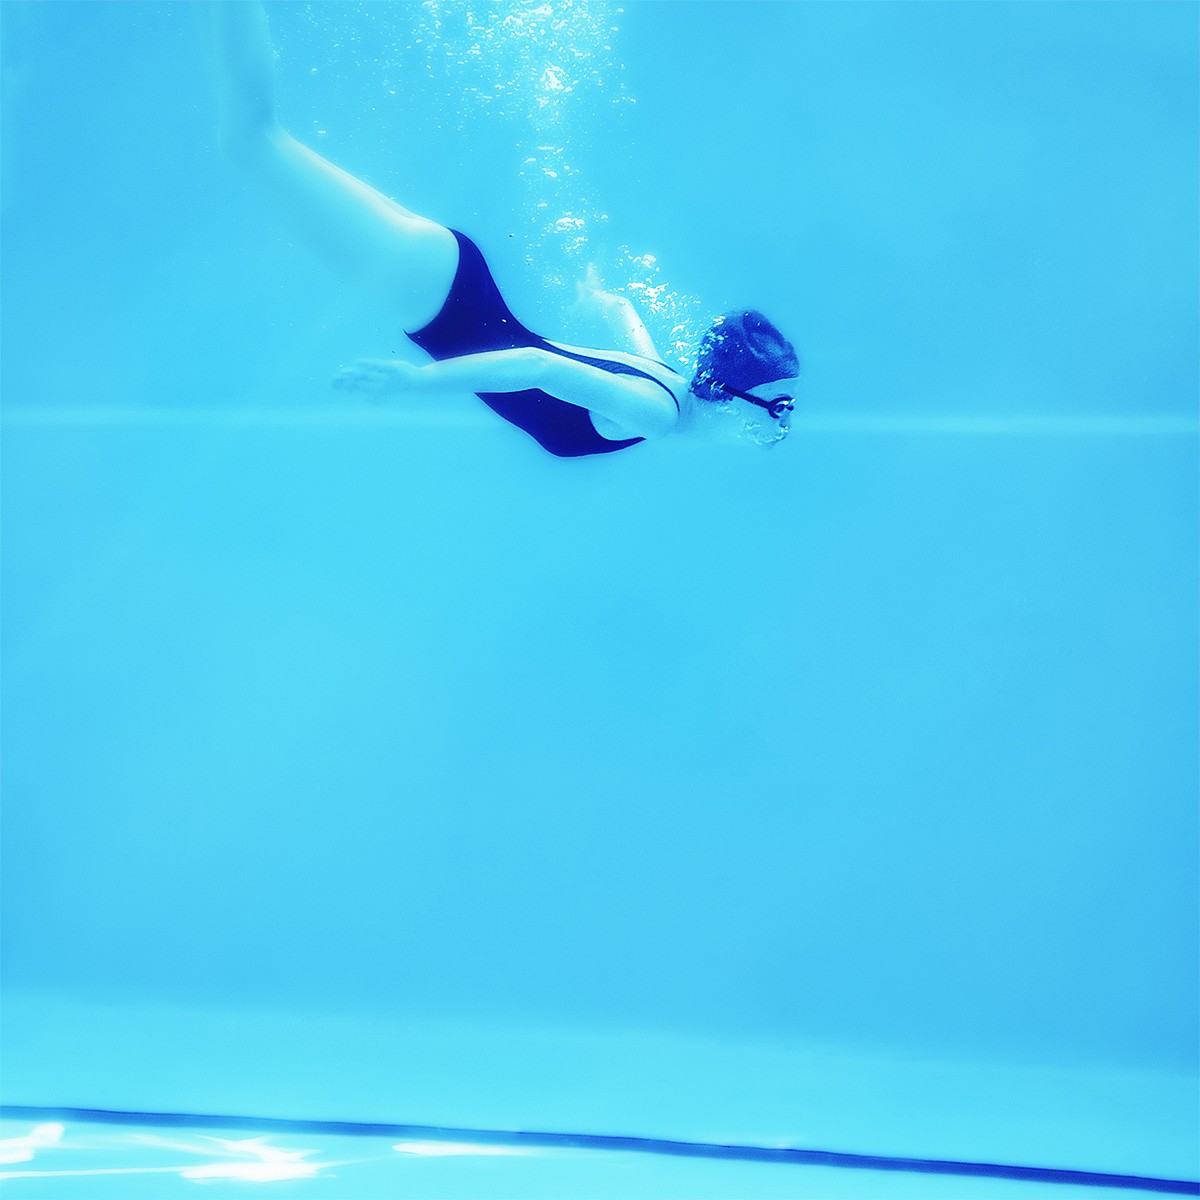 Лежать на дне бассейна. Женщина на дне бассейна. Фотопроект в бассейне. Плитка в бассейне под водой. Блондинка на дне бассейна.